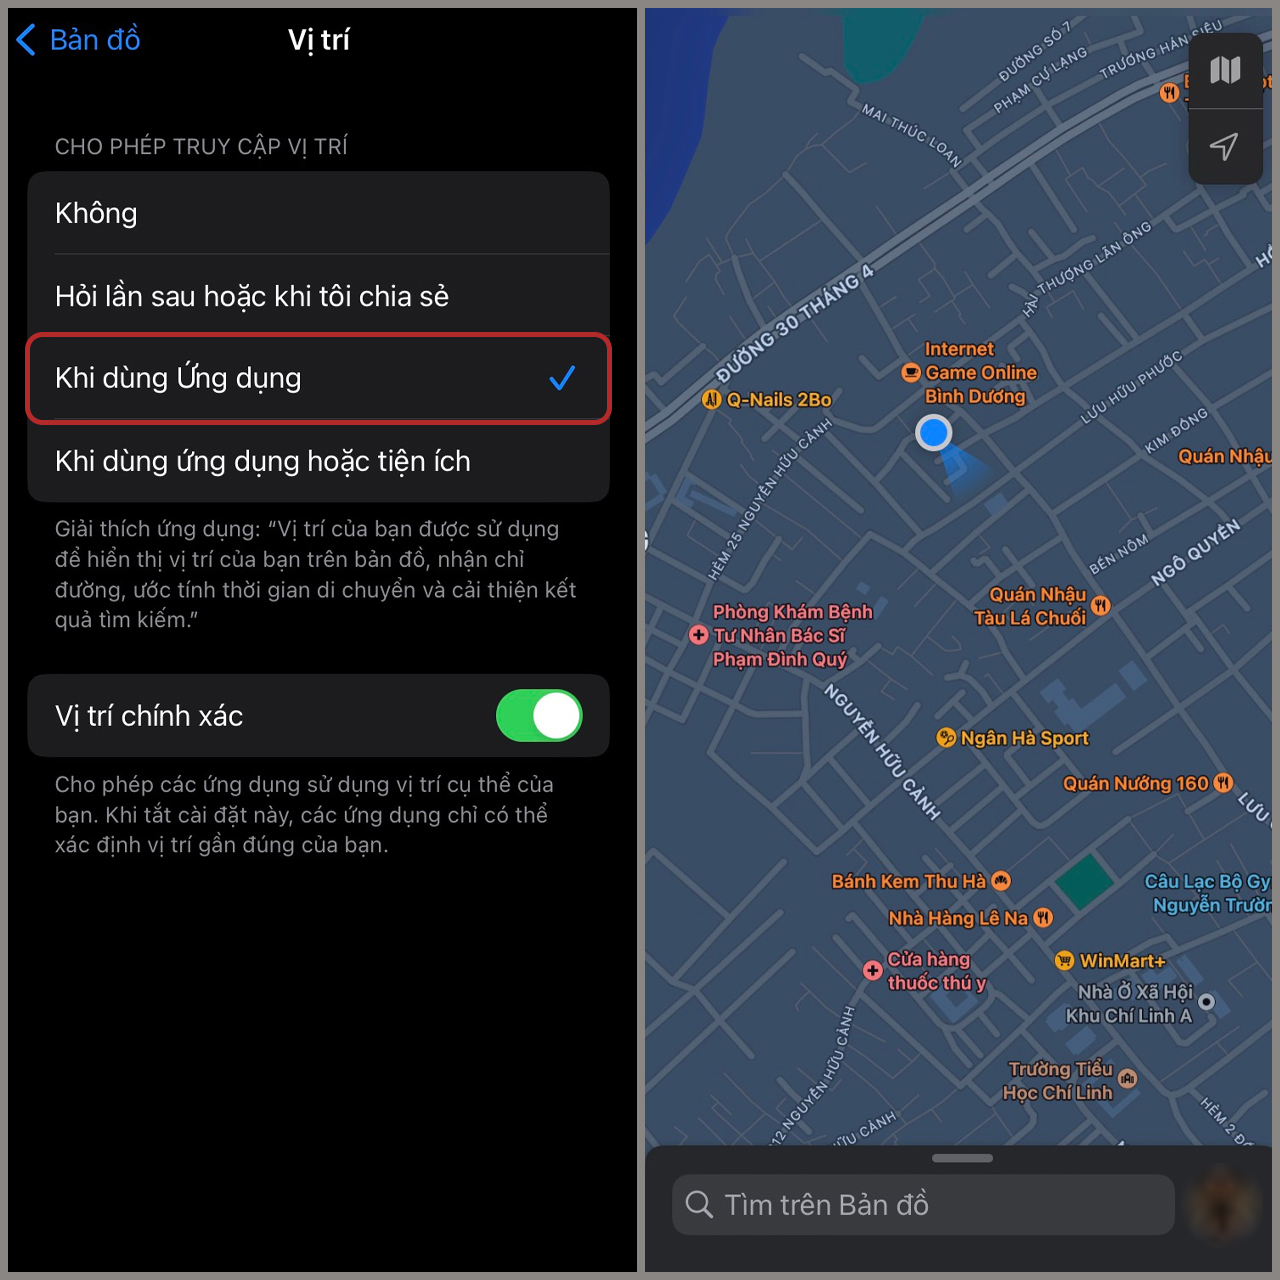 iPhone của bạn có thể giúp bạn định vị vị trí hiện tại của mình chỉ với vài thao tác đơn giản trên màn hình. Với tính năng định vị GPS mạnh mẽ, bạn sẽ luôn biết nơi mình đang ở và có thể dễ dàng tìm đường đến mọi địa điểm.